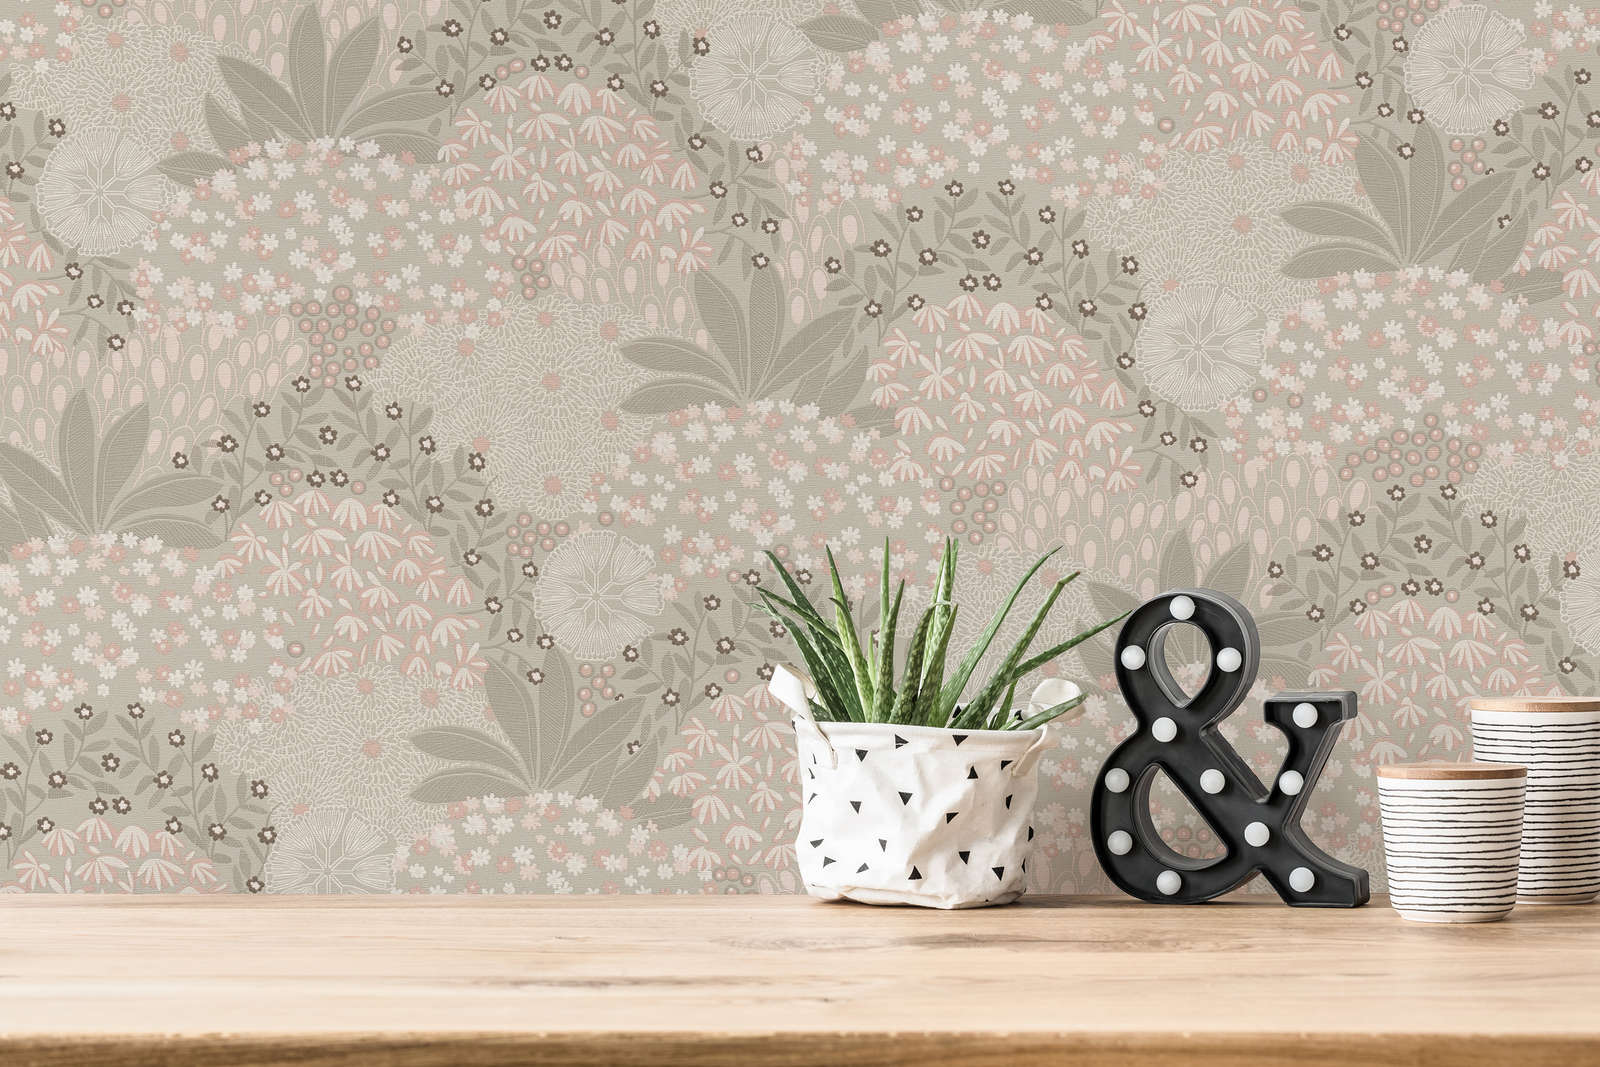             Vintage floral wallpaper with floral design - grey, pink
        